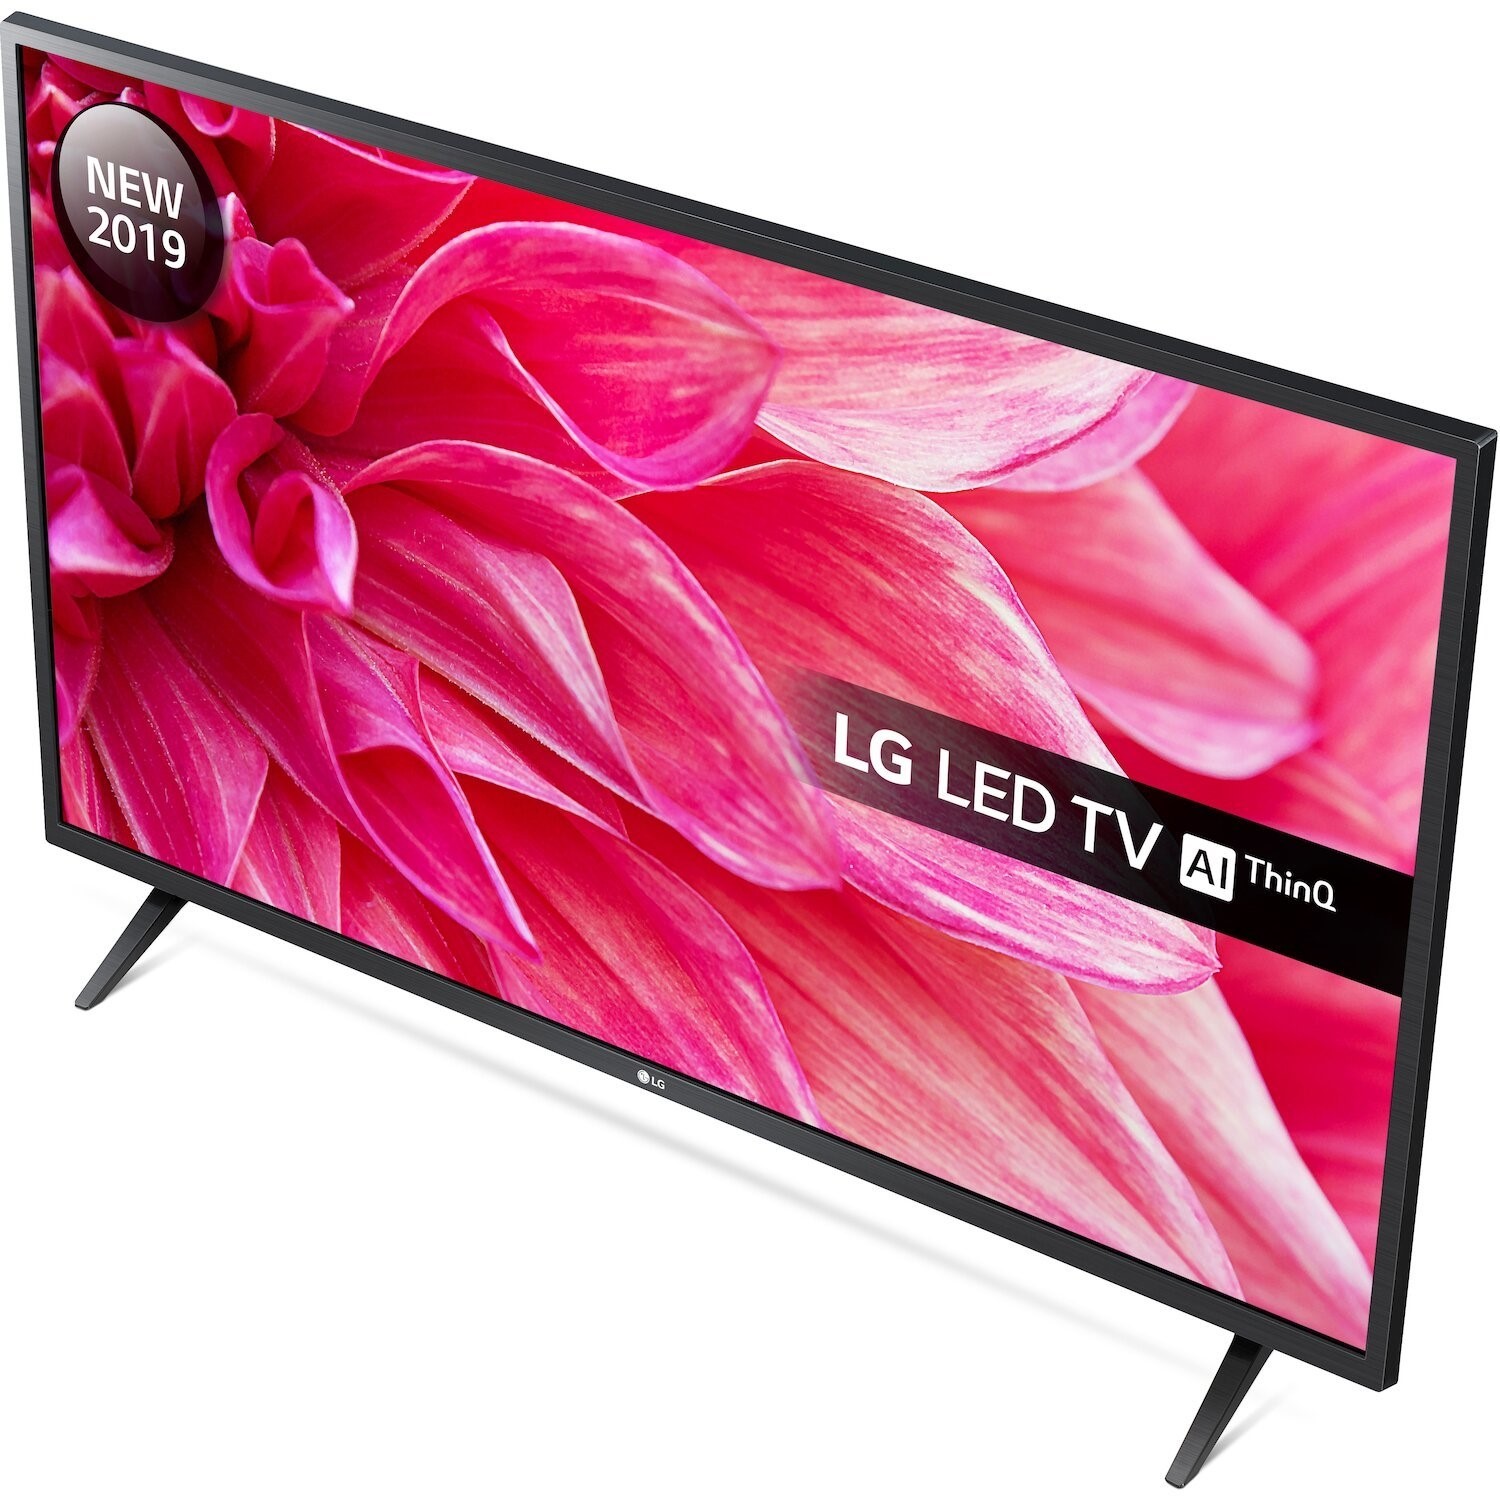 Lg tv цены. Led телевизор LG 32lm6350. LG 43lm6300pla. 32 LG 32lm630bpla. Телевизор LG 32lm6300pla.